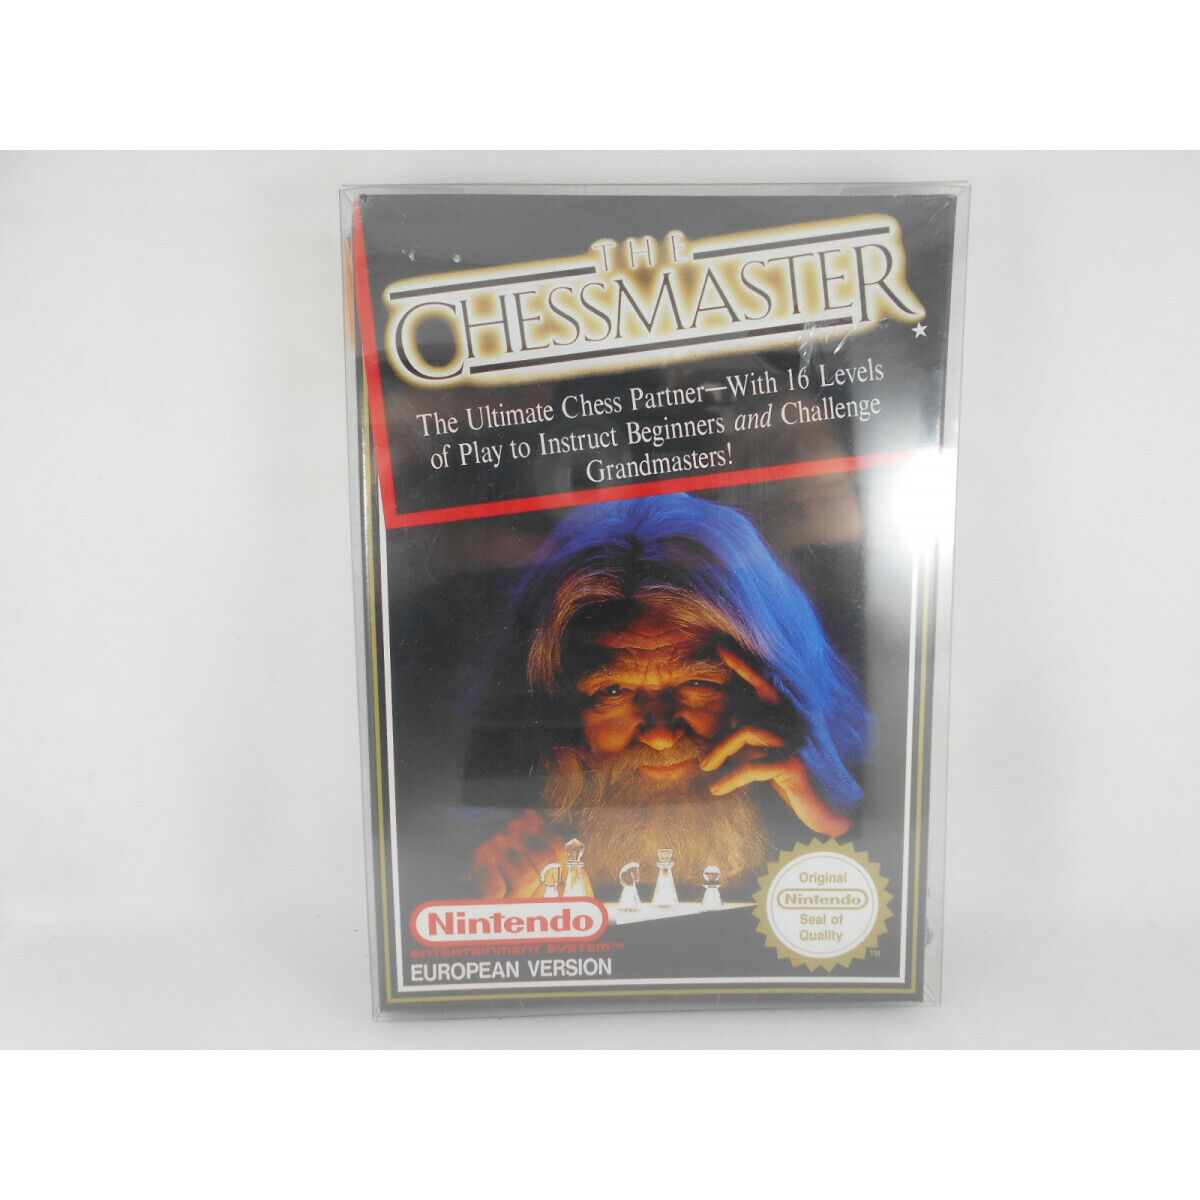 The Chessmaster - PAL B - Nintendo NES - Nuevo a Estrenar - 045496430092 - New